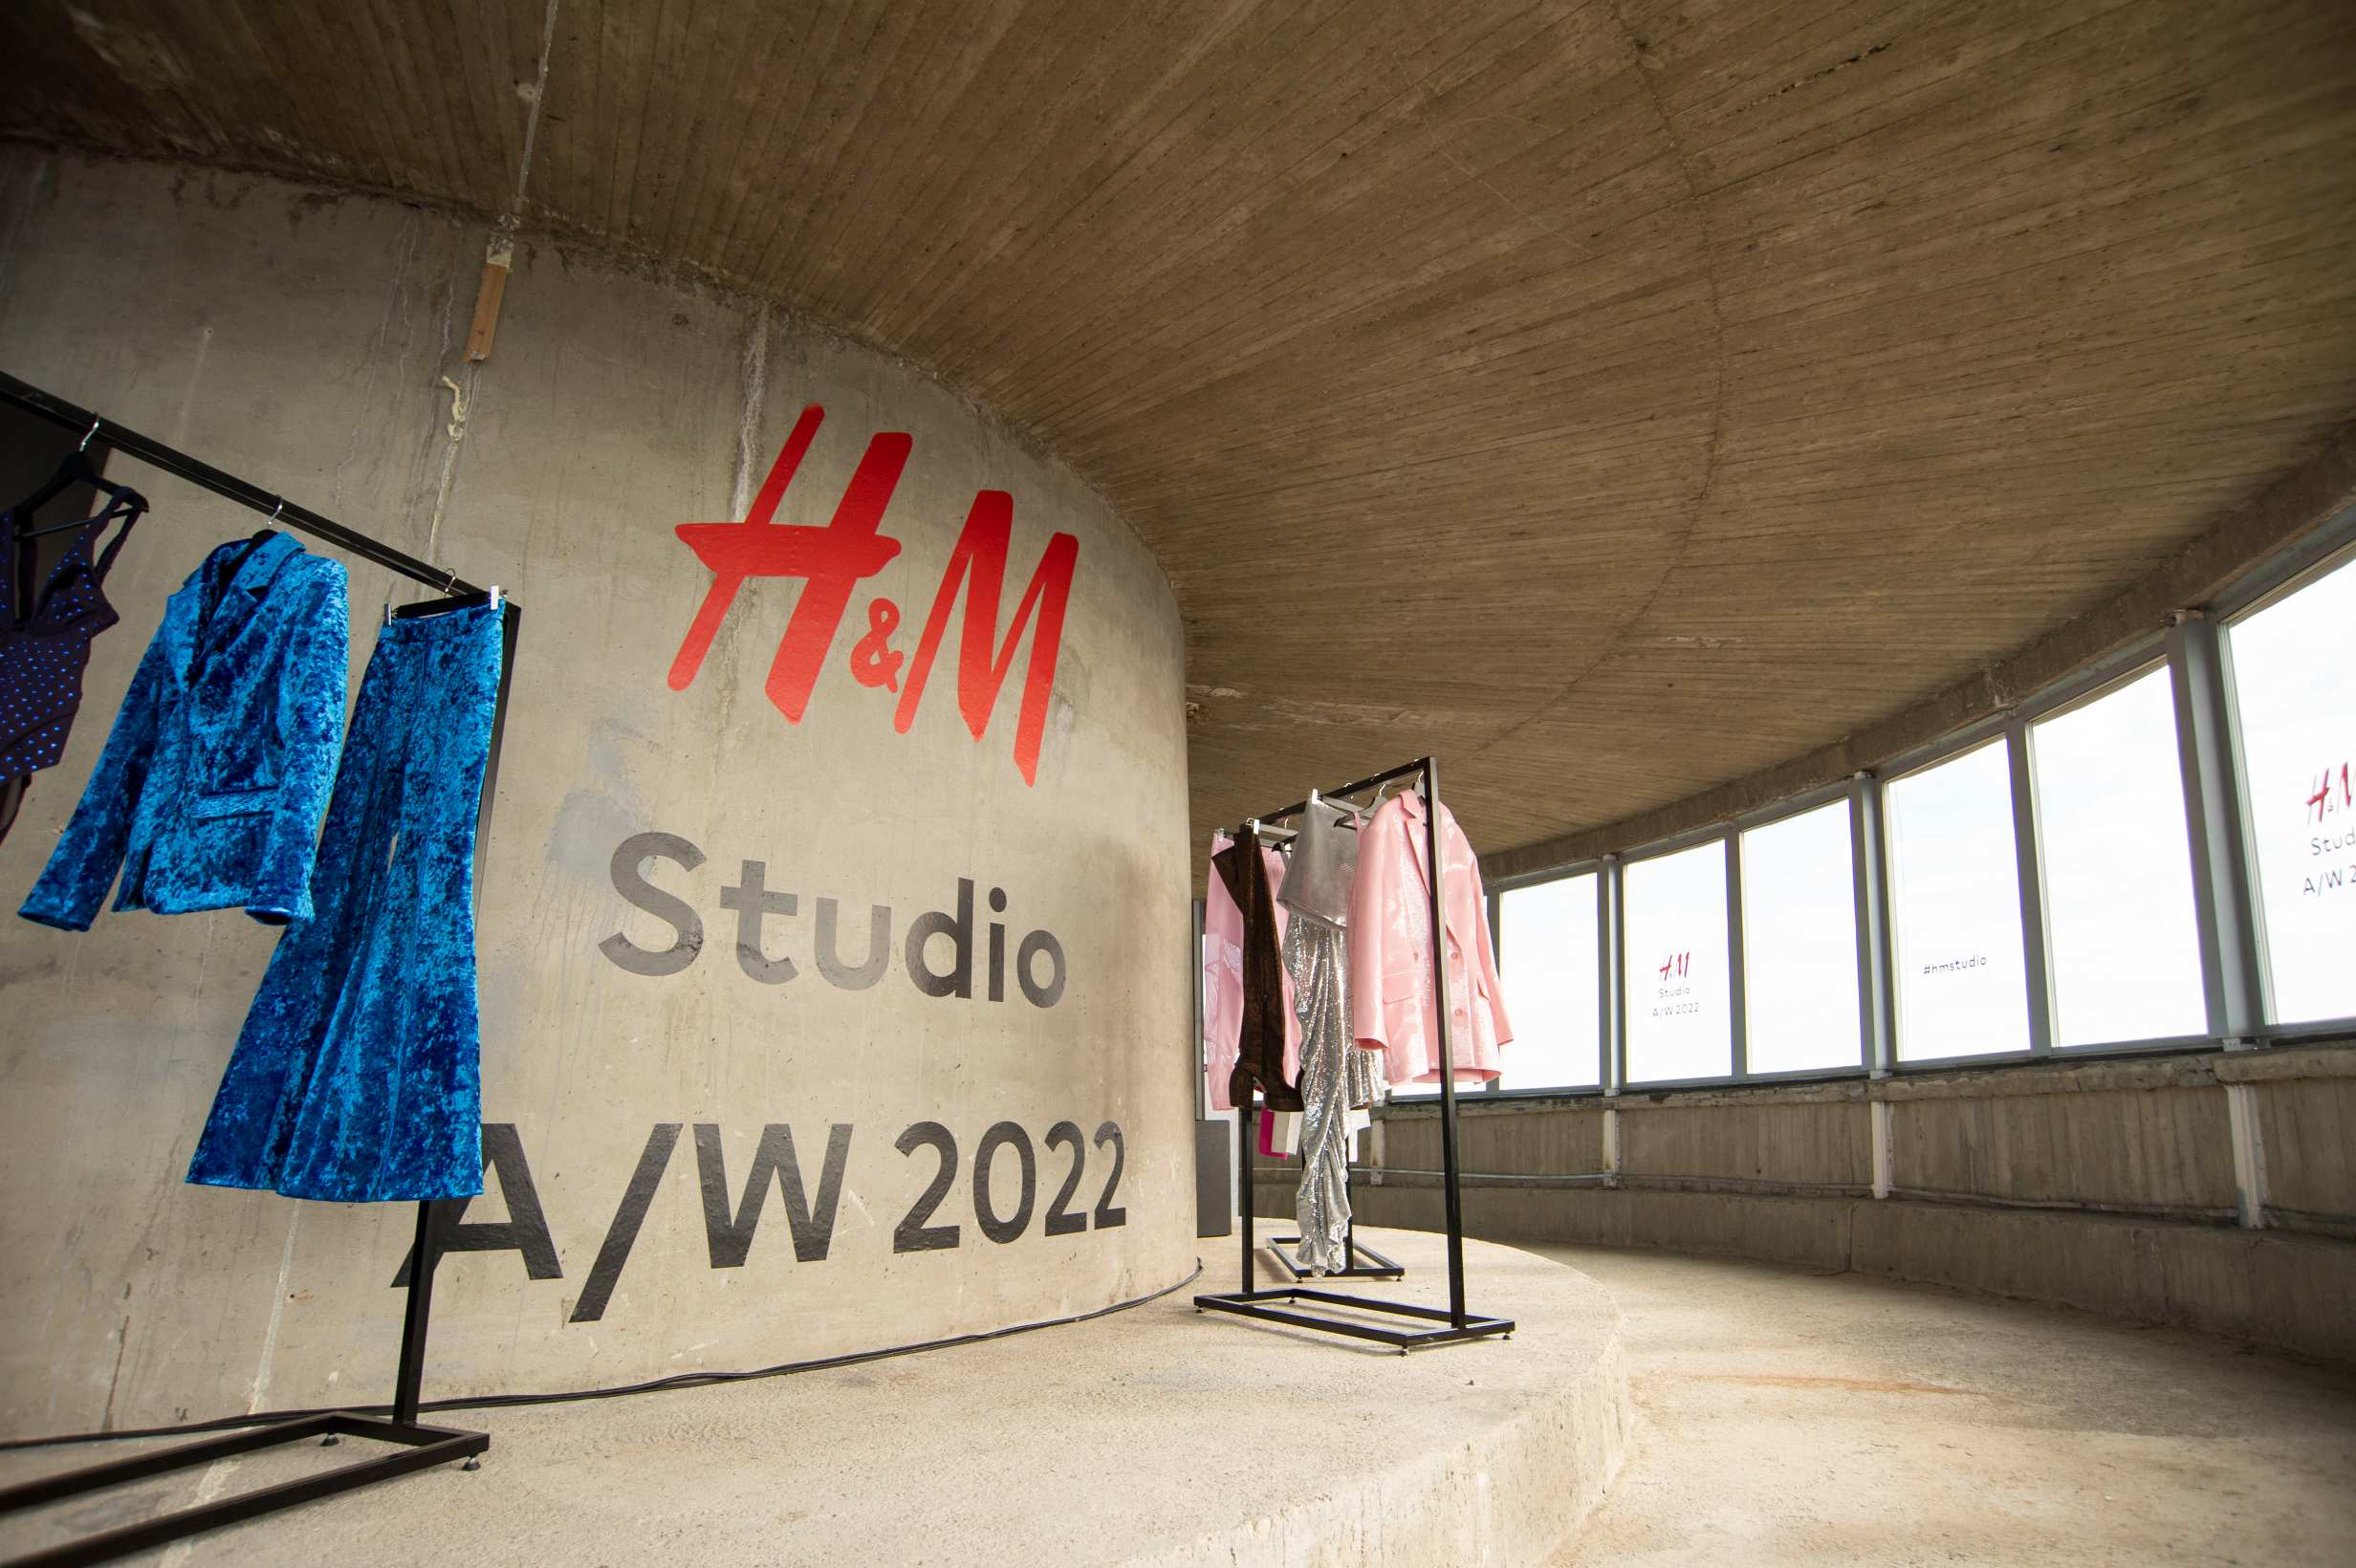 H&M studio A/W22 kolekcija lansirana s tornja Sljeme